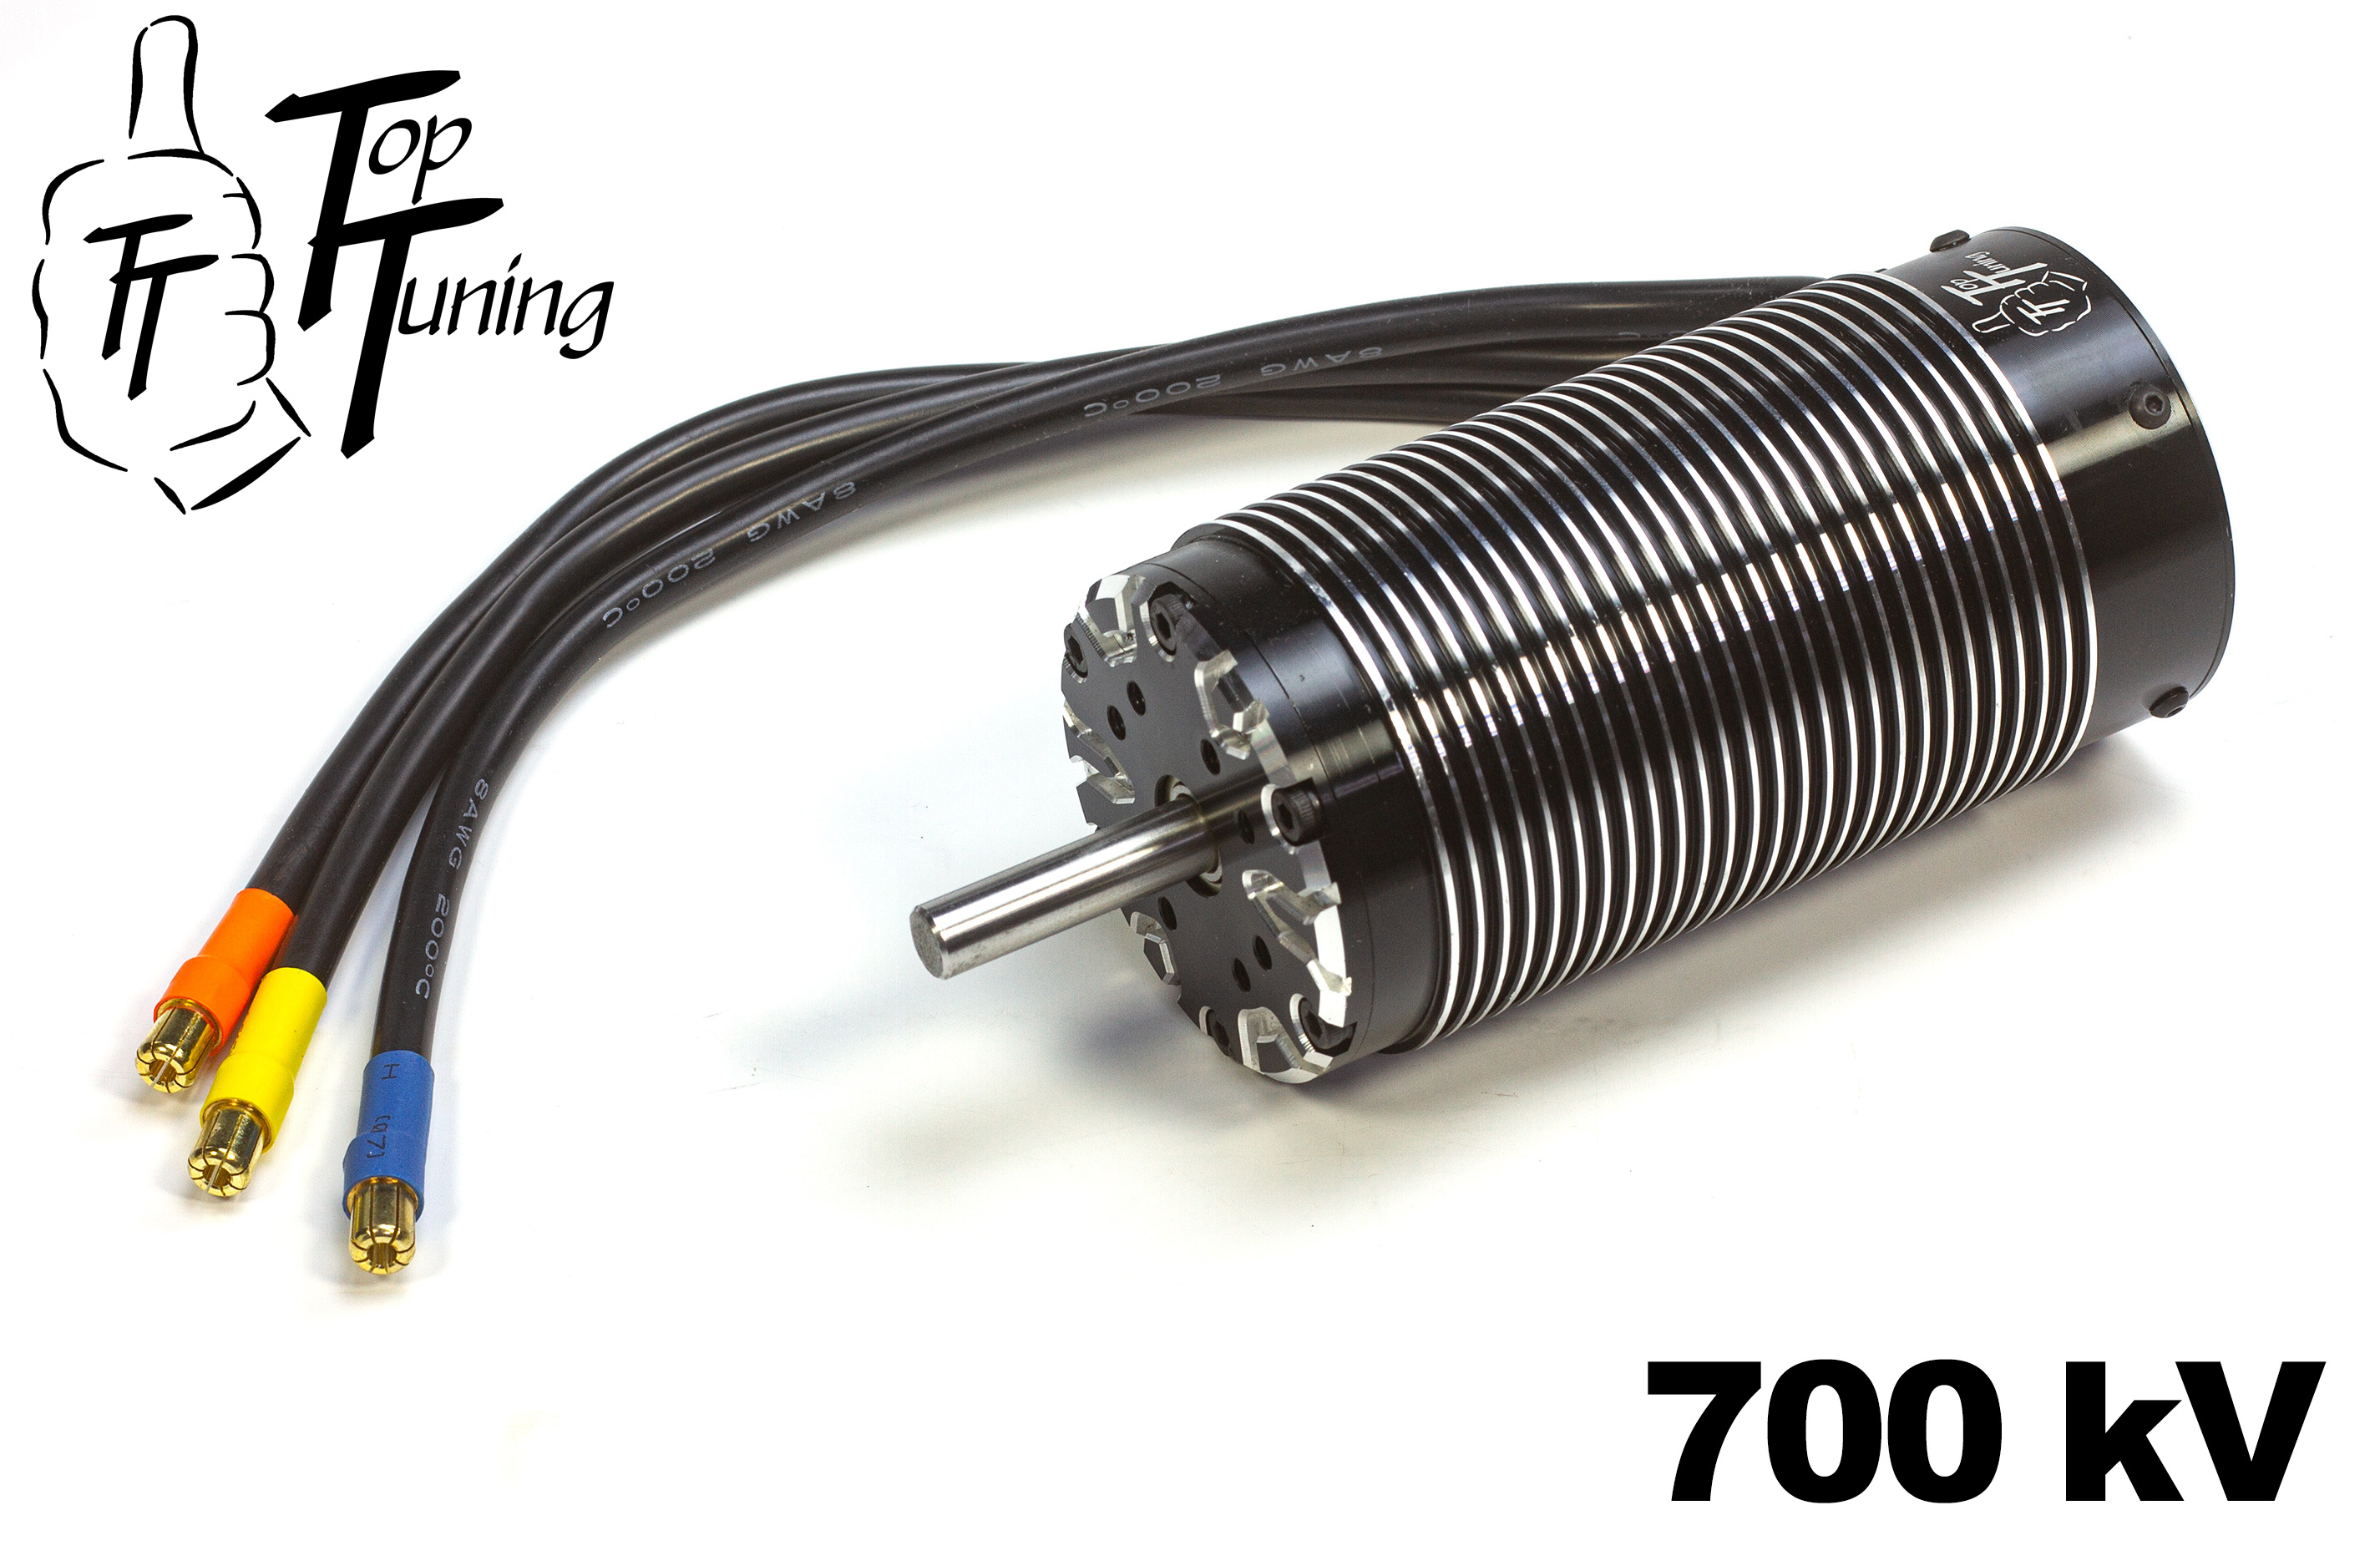 TT56112/700 Top Tuning Monster Brushless Motor 700 kV